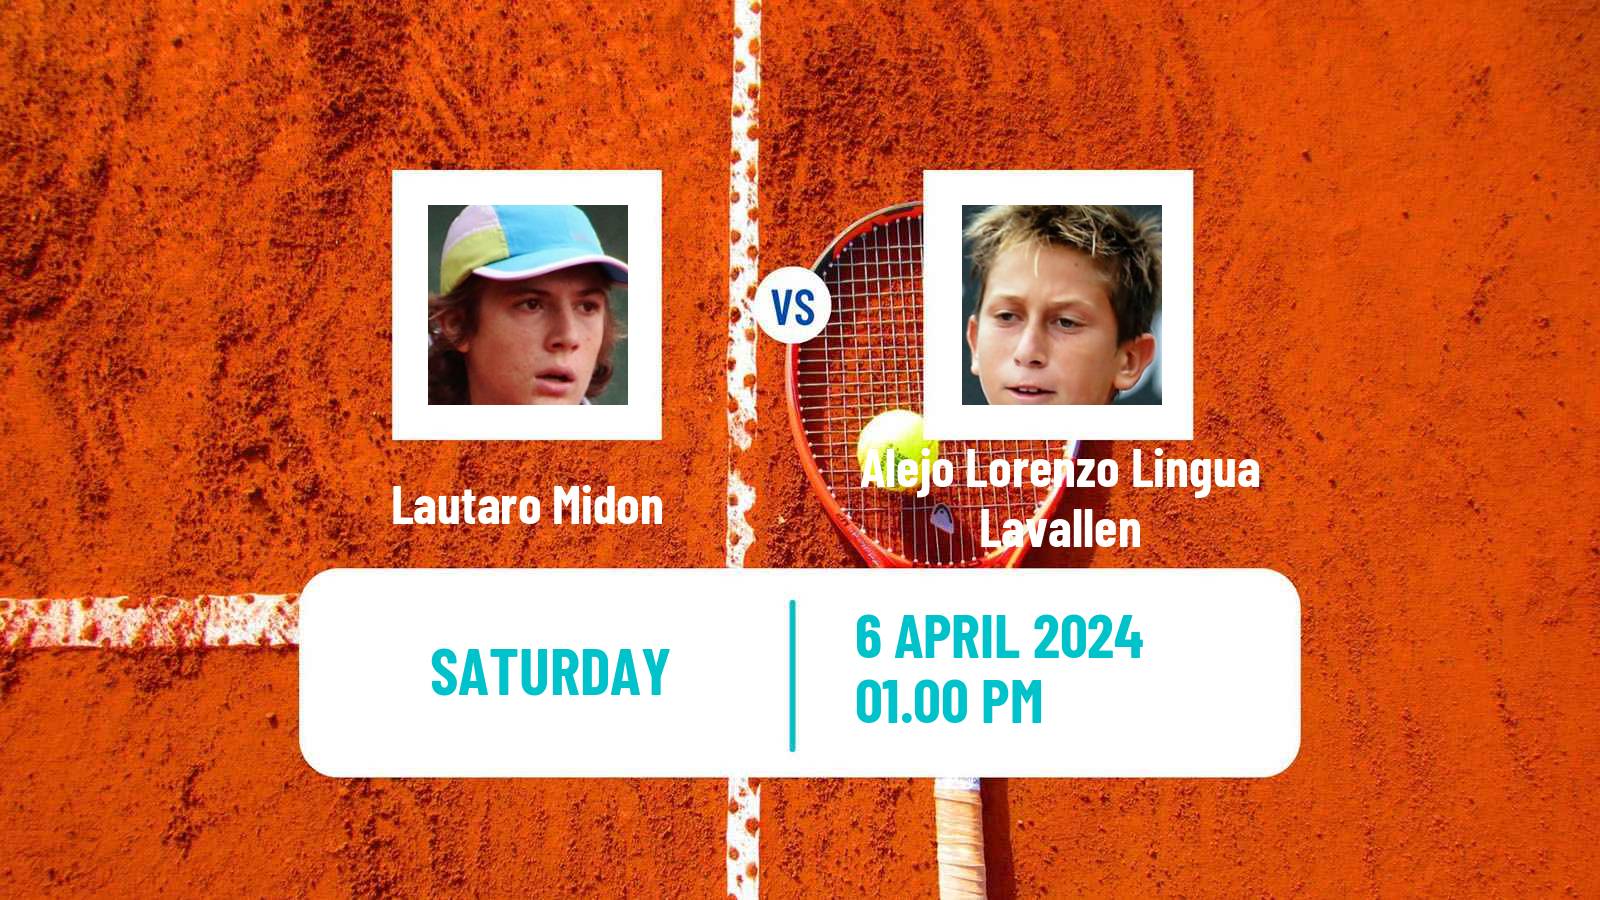 Tennis ITF M15 Bragado 2 Men Lautaro Midon - Alejo Lorenzo Lingua Lavallen